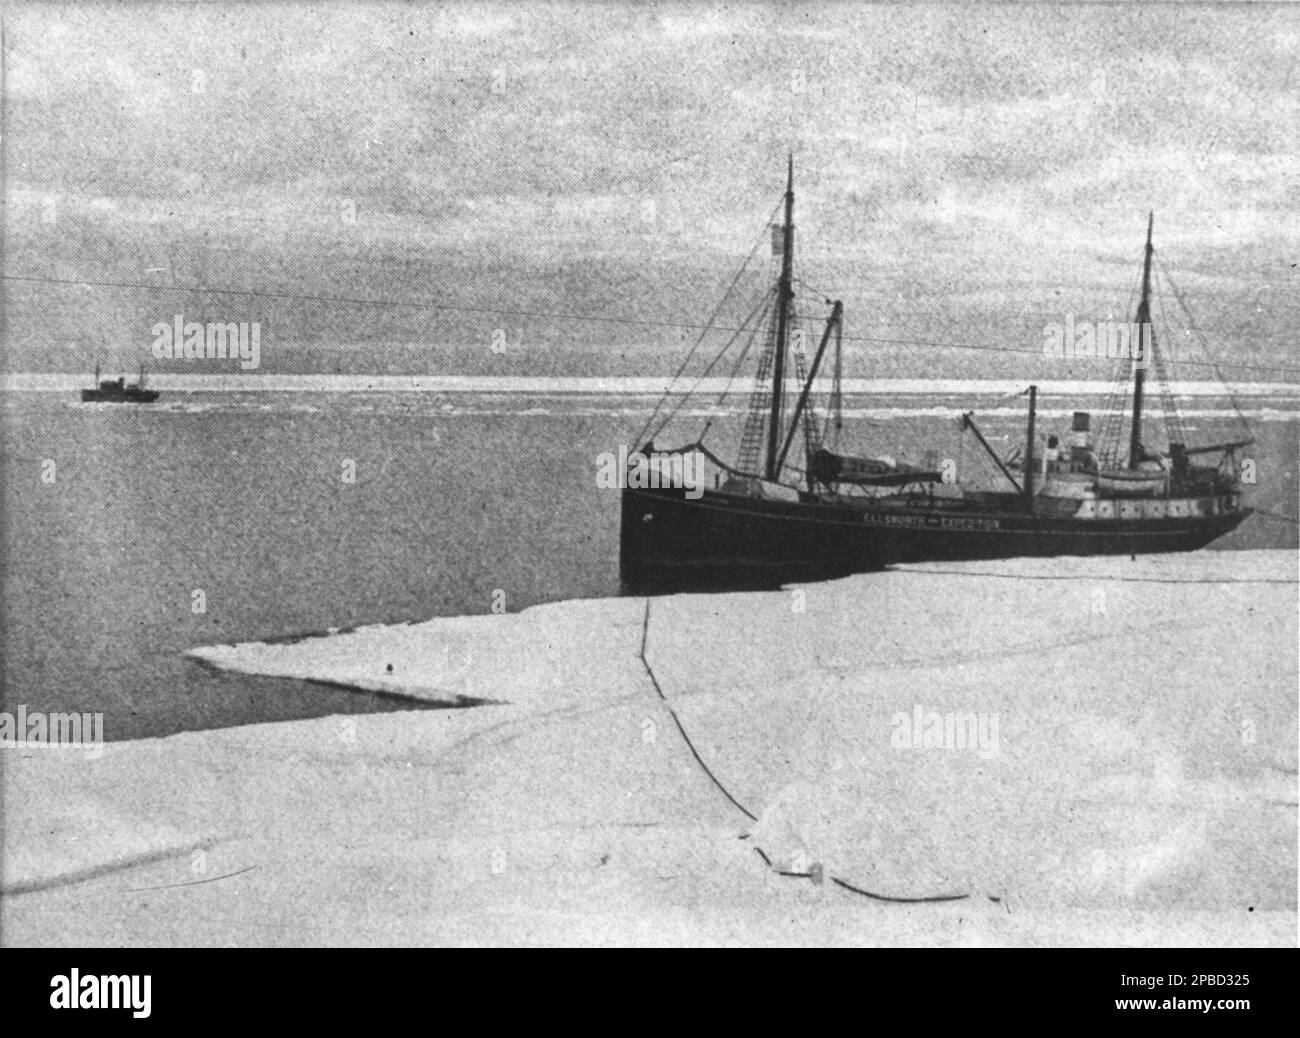 HMAS Wyatt EARP amarré à la baie de Whales, un port de glace naturel, ou iceport, en train d'abriter l'avant de la plate-forme de glace Ross, juste au nord de l'île Roosevelt, en Antarctique. C'est le point le plus au sud de l'océan ouvert non seulement de la mer de Ross, mais dans le monde entier. Vers 1933. Banque D'Images